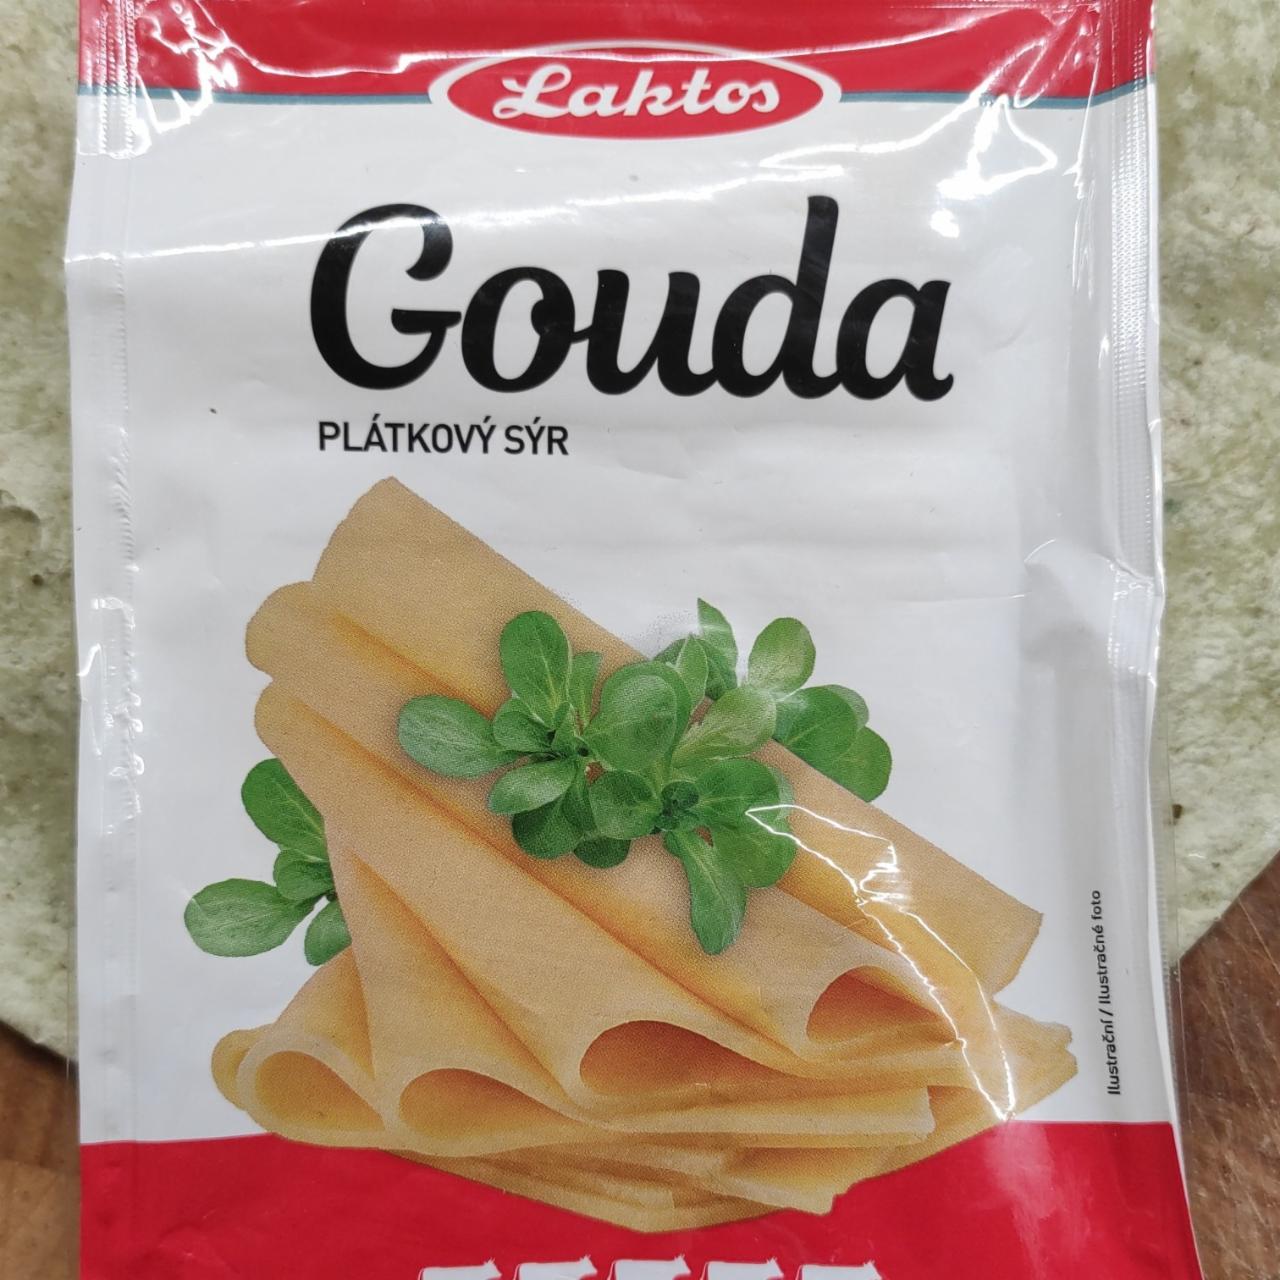 Fotografie - Gouda plátkový sýr Laktos